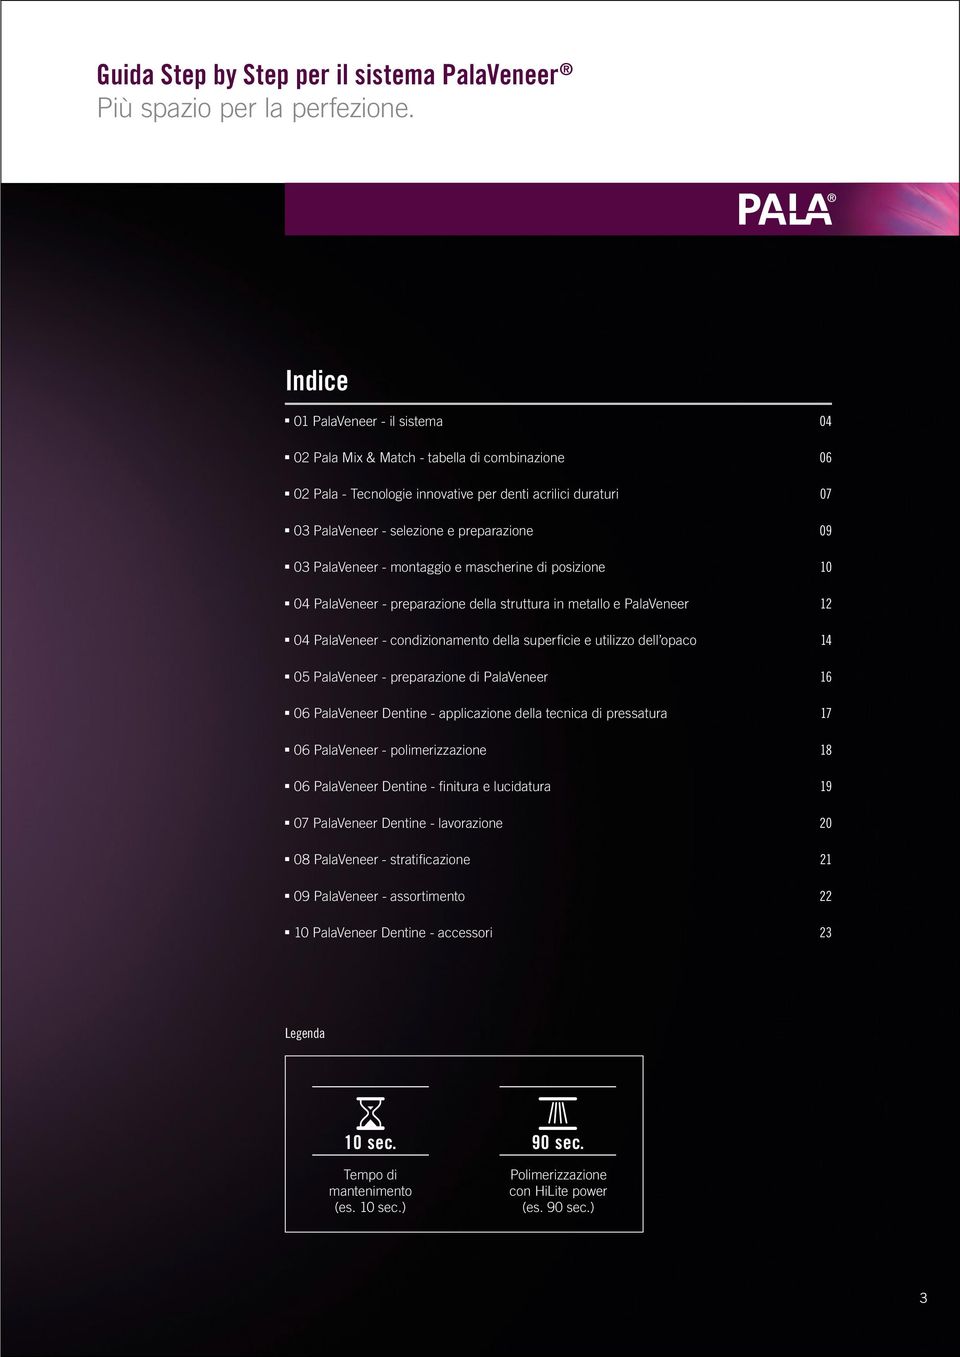 PalaVeneer - montaggio e mascherine di posizione 10 04 PalaVeneer - preparazione della struttura in metallo e PalaVeneer 12 04 PalaVeneer - condizionamento della superficie e utilizzo dell opaco 14